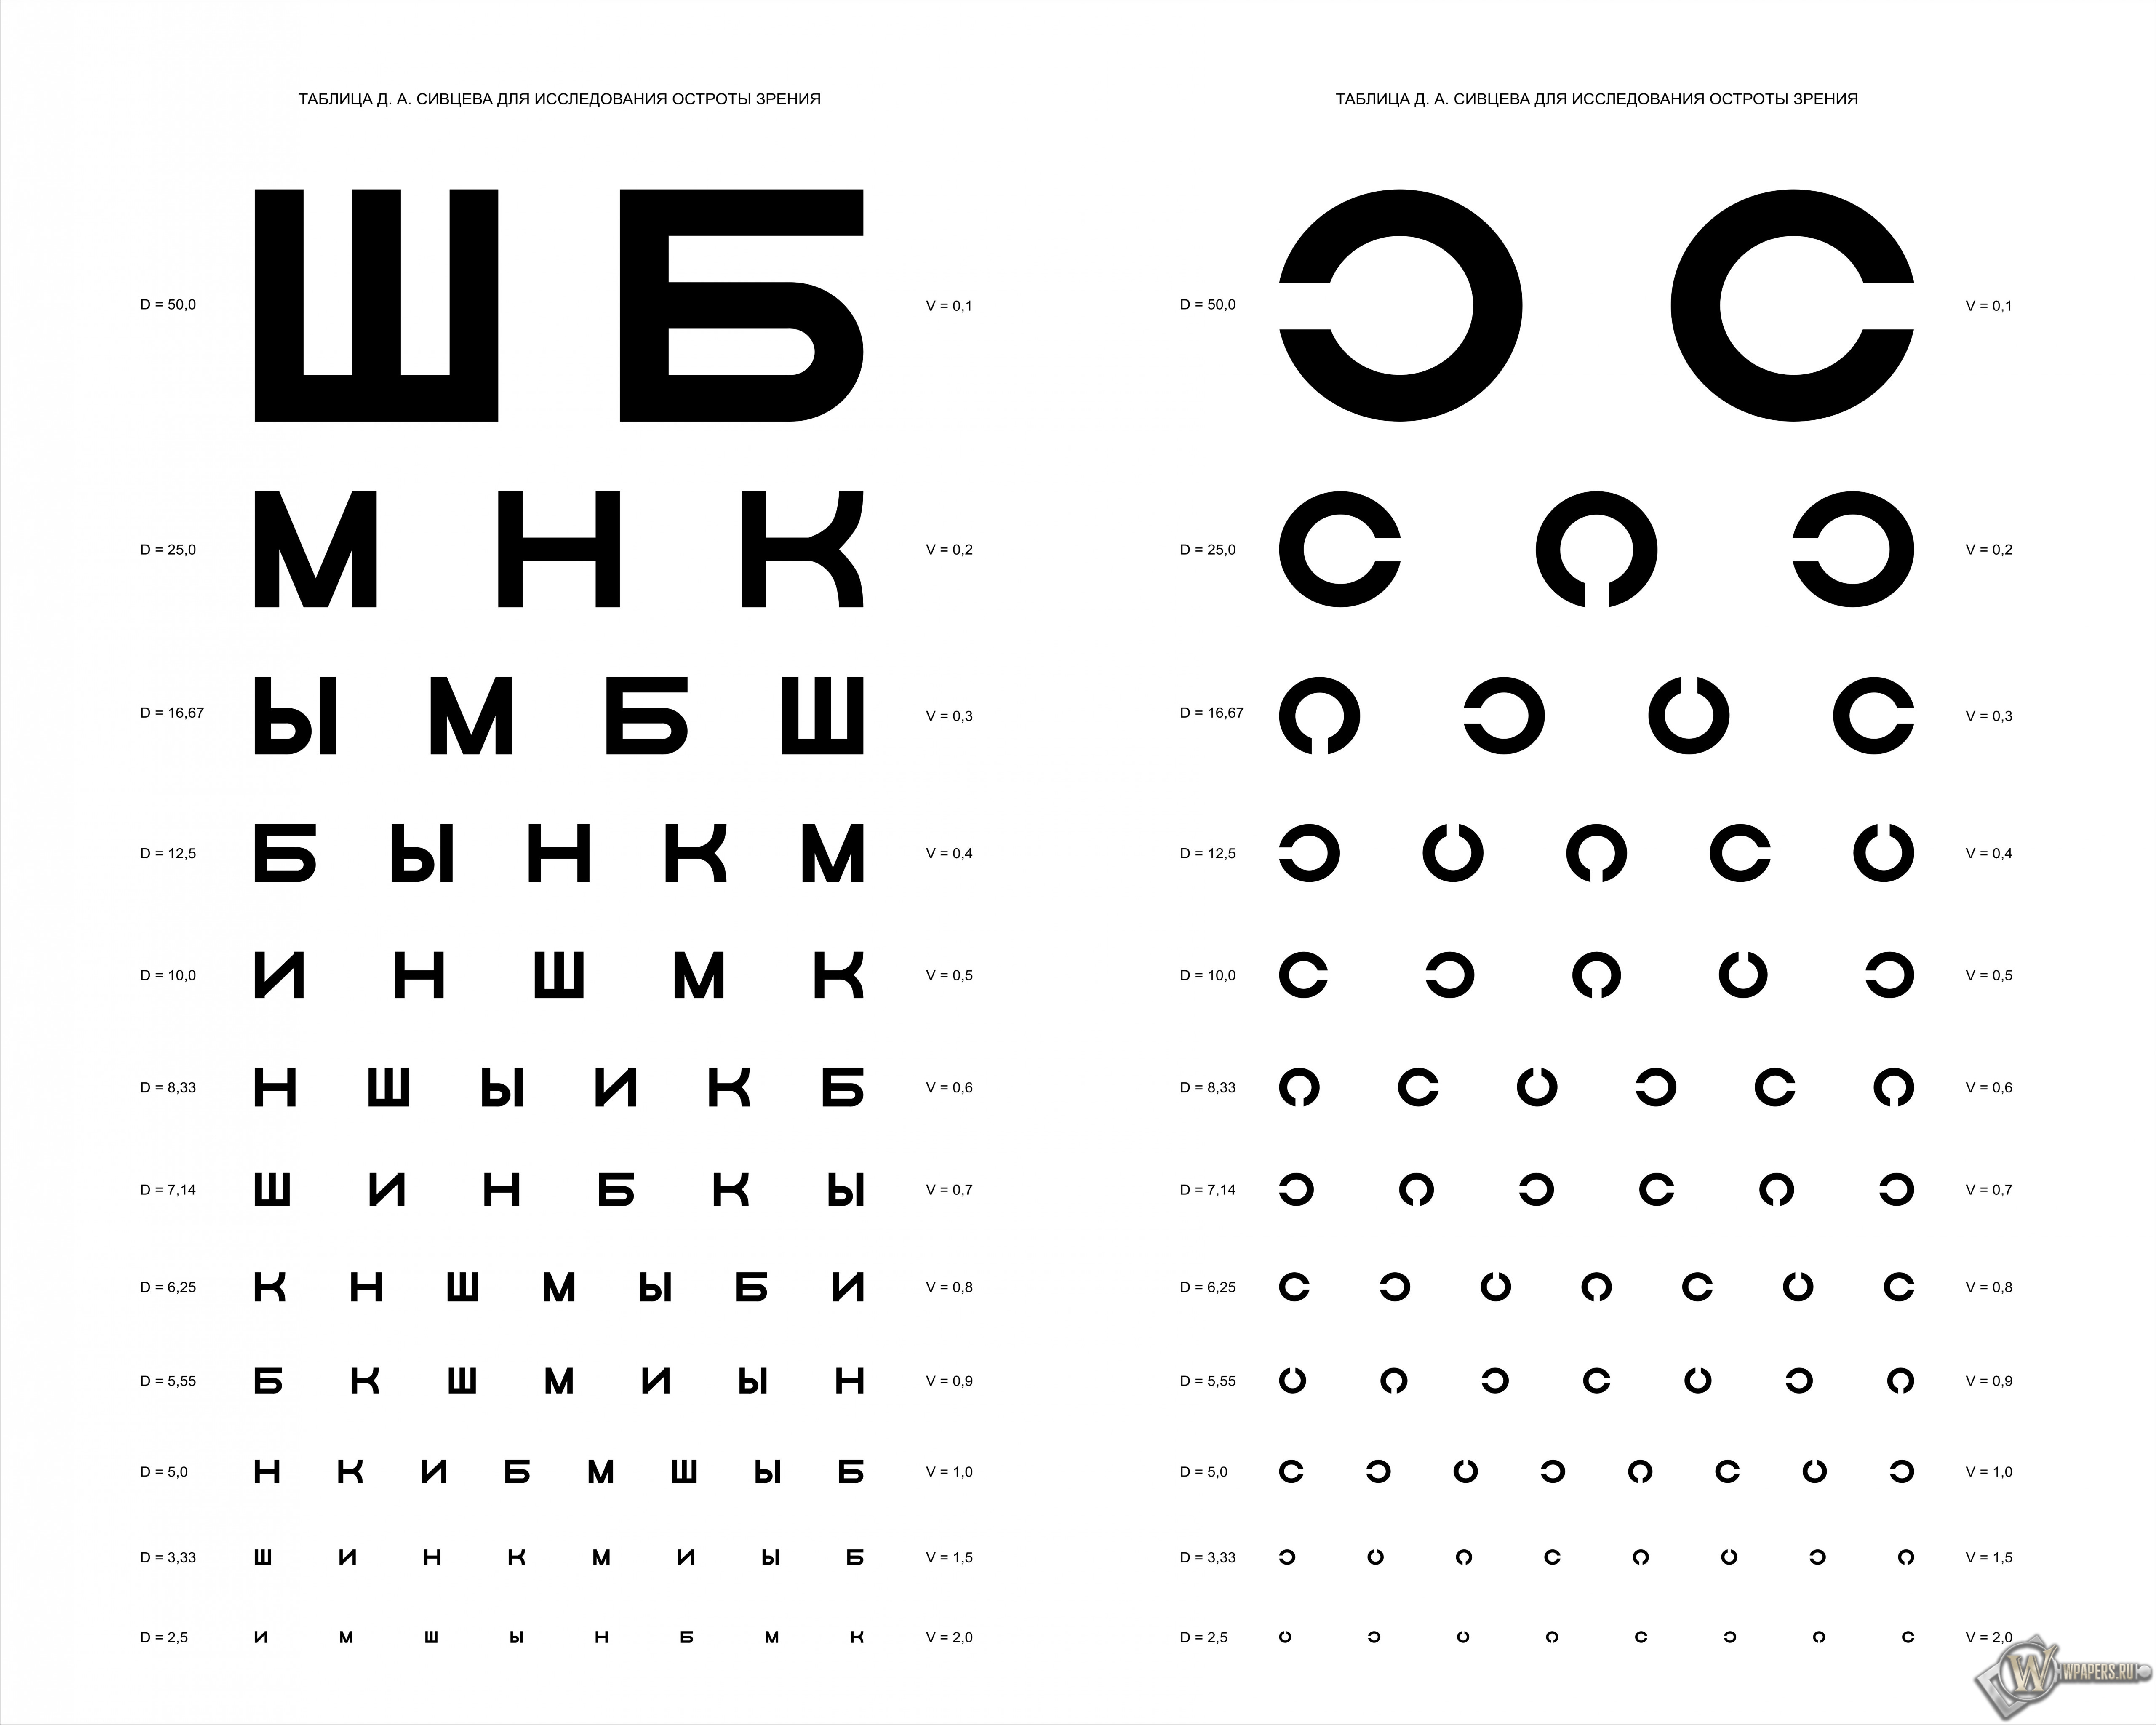 Таблица Д.А. Сивцева для проверки зрения 5120x4096